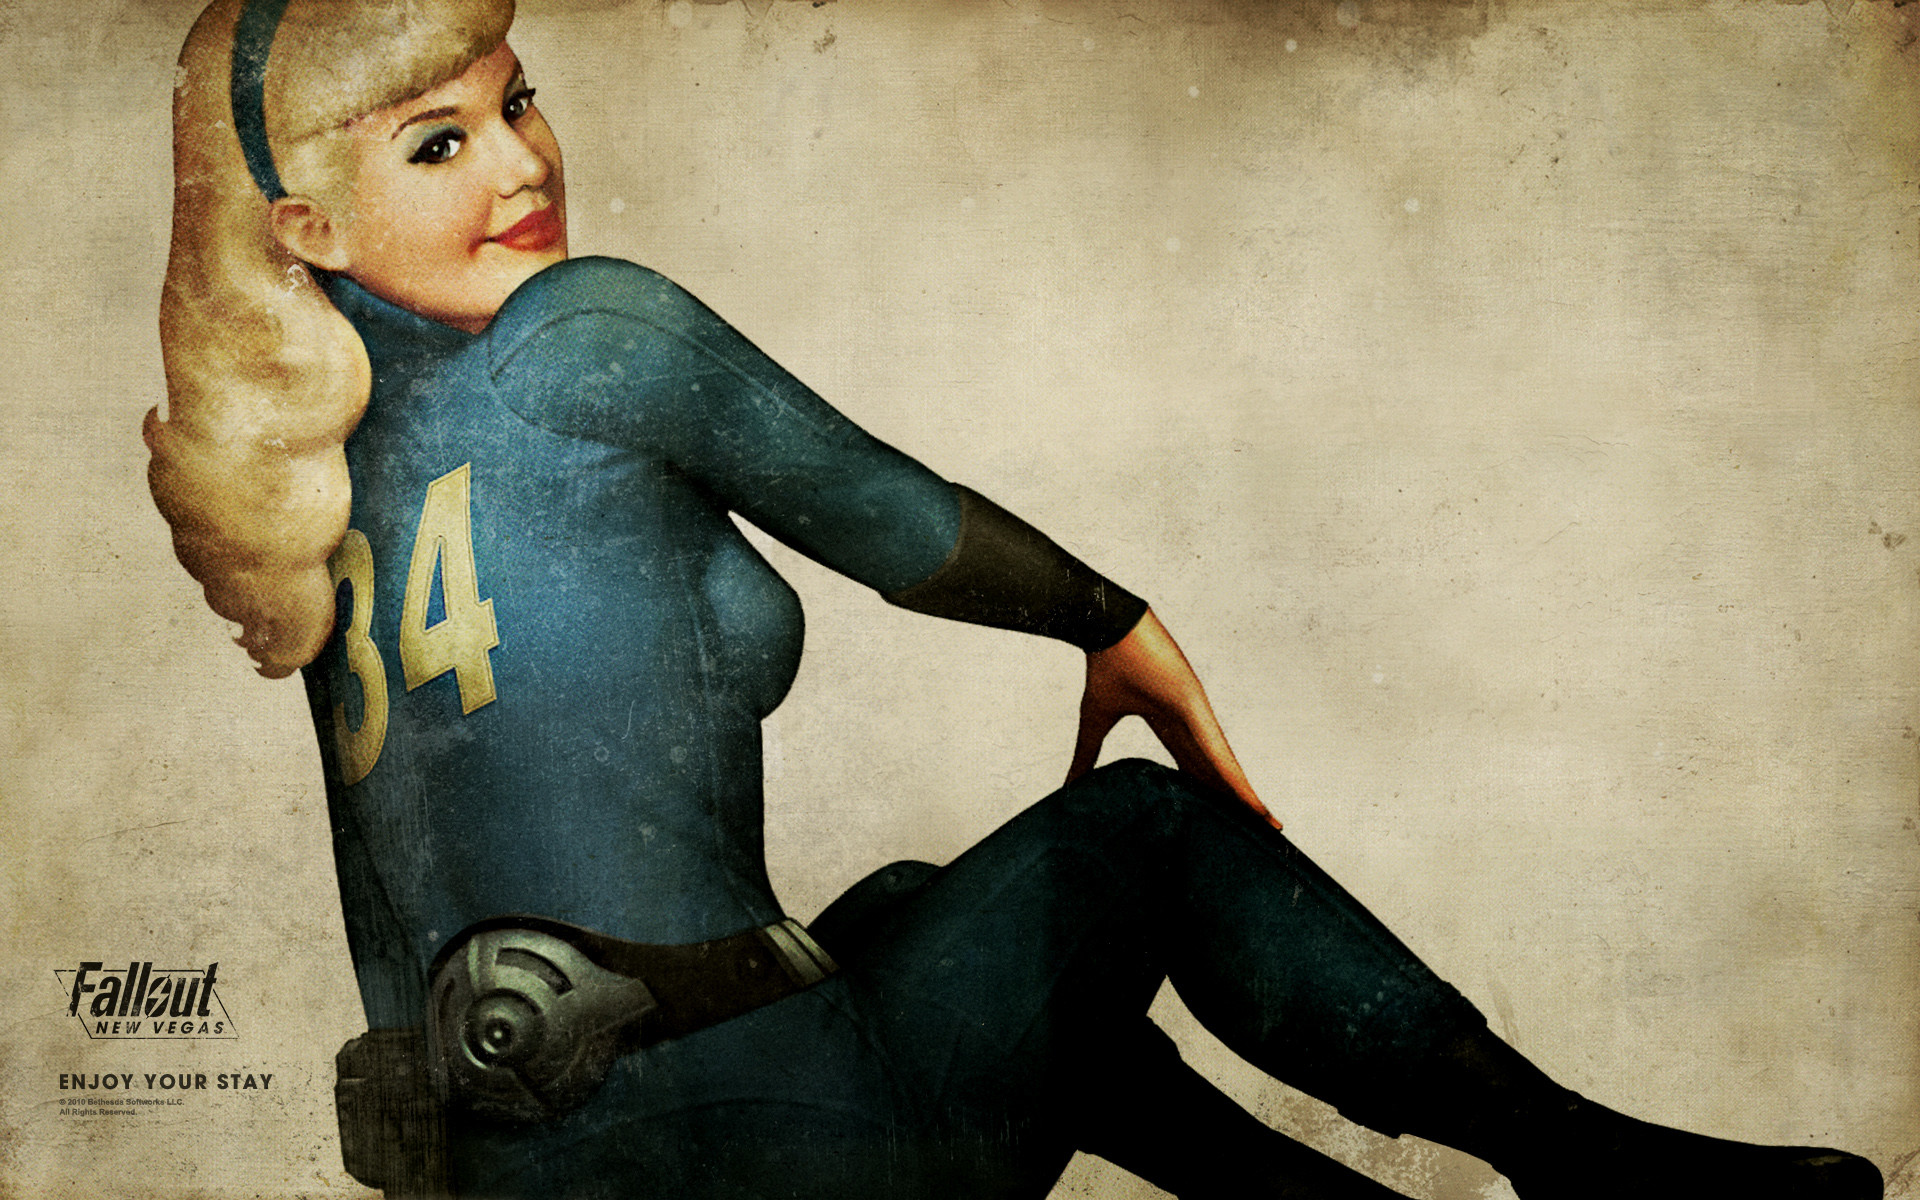 Fallout 4 wallpaper – Google Search